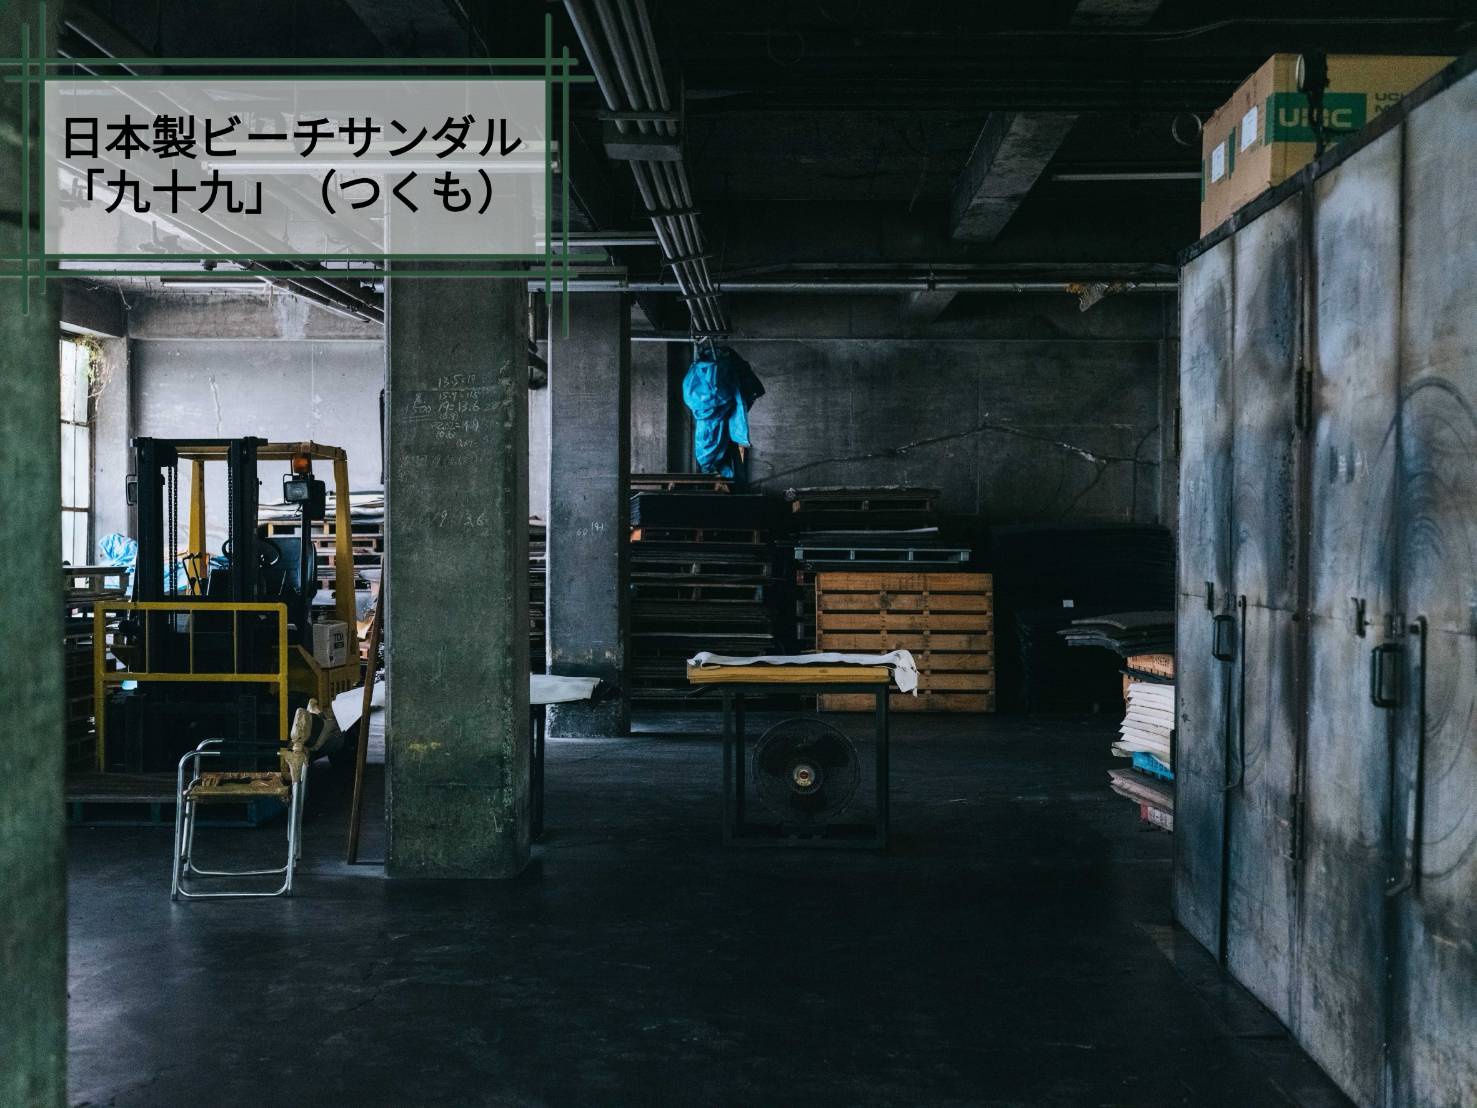 ■TSUKUMOは現存する日本最古の「ビーチサンダル」工場